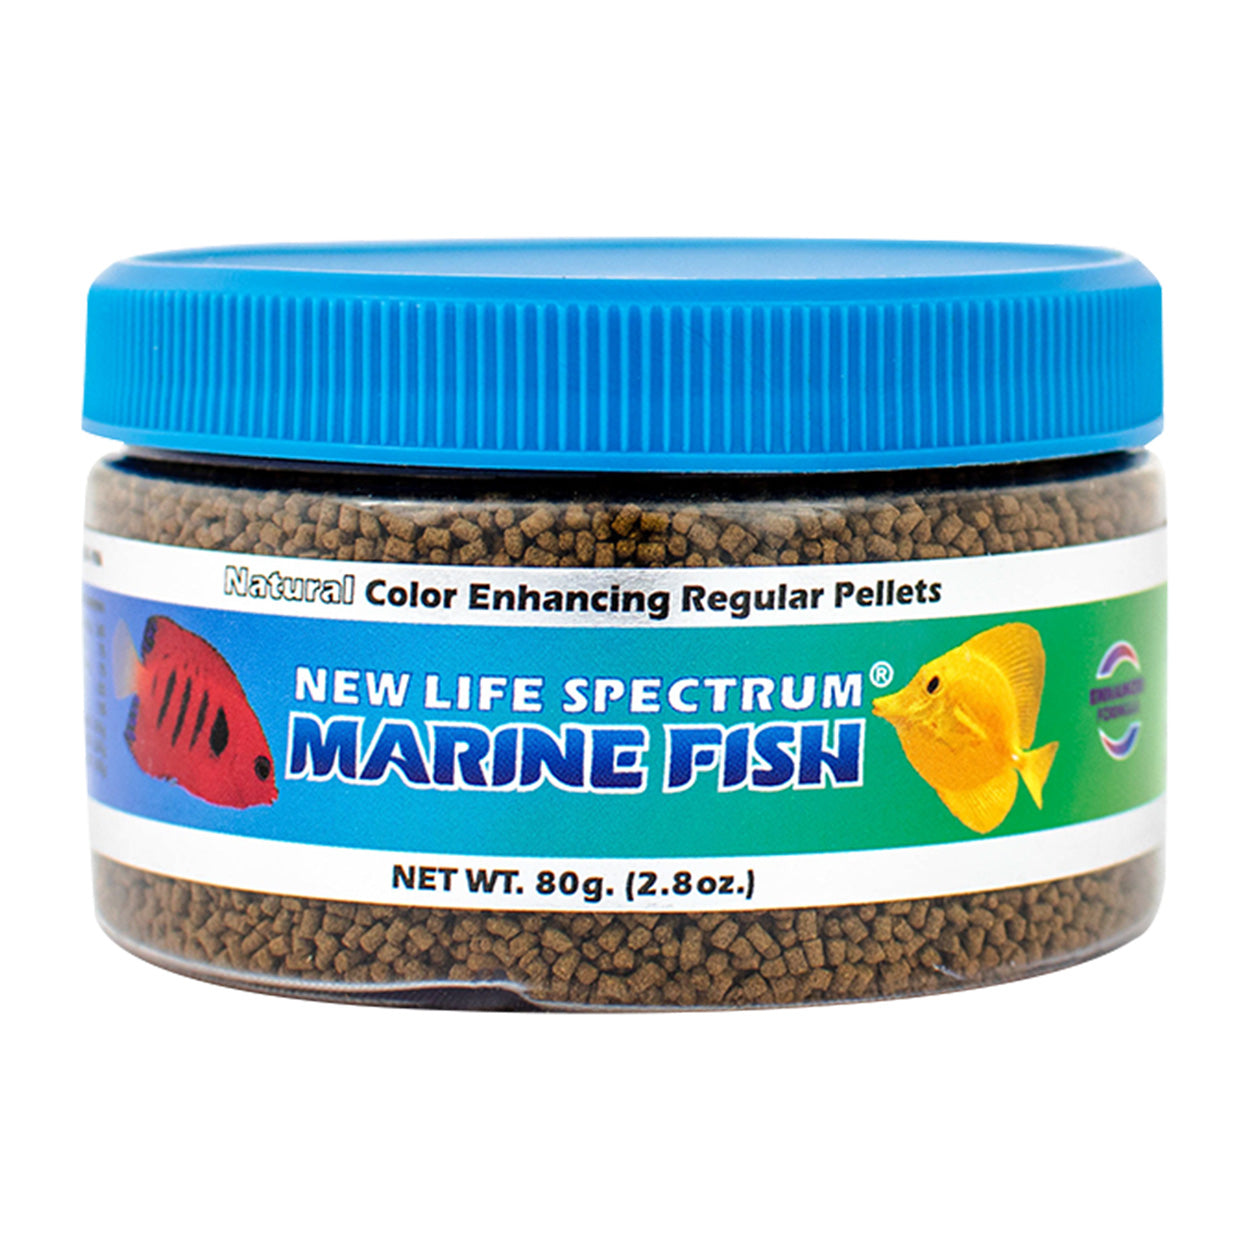 New Life Spectrum Naturox Marine Fish